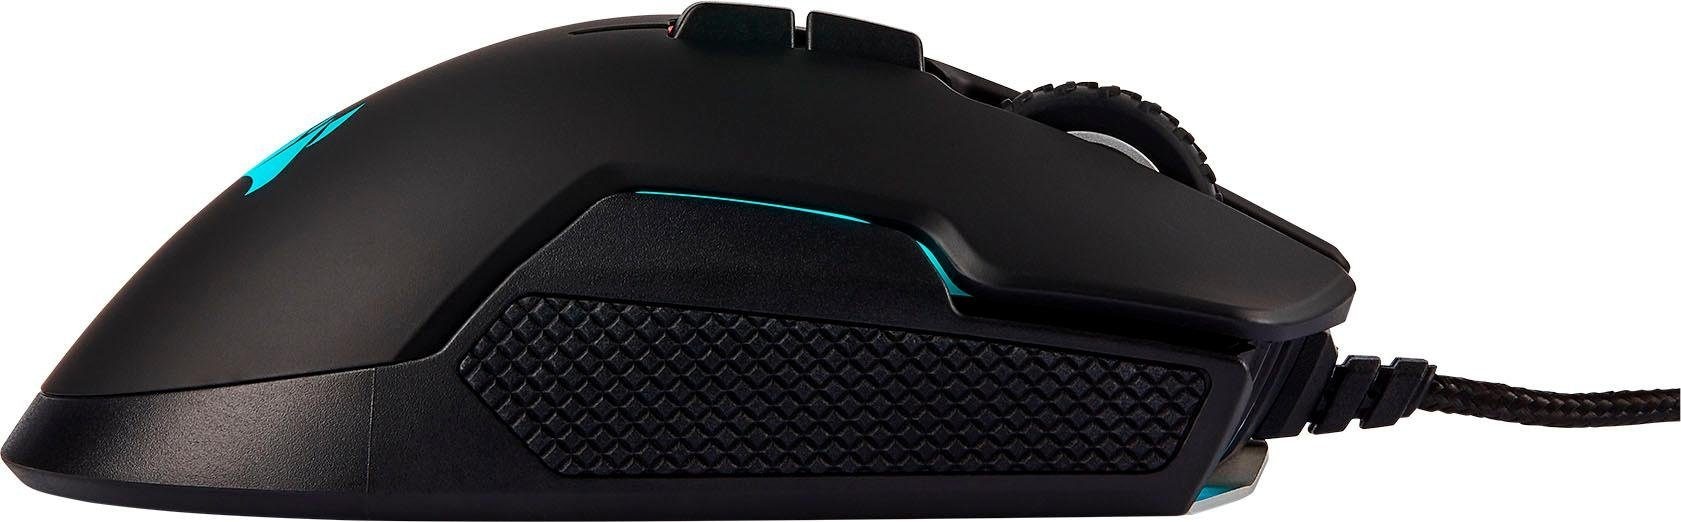 Corsair Gaming-Maus »GLAIVE RGB PRO Aluminium«, kabelgebunden